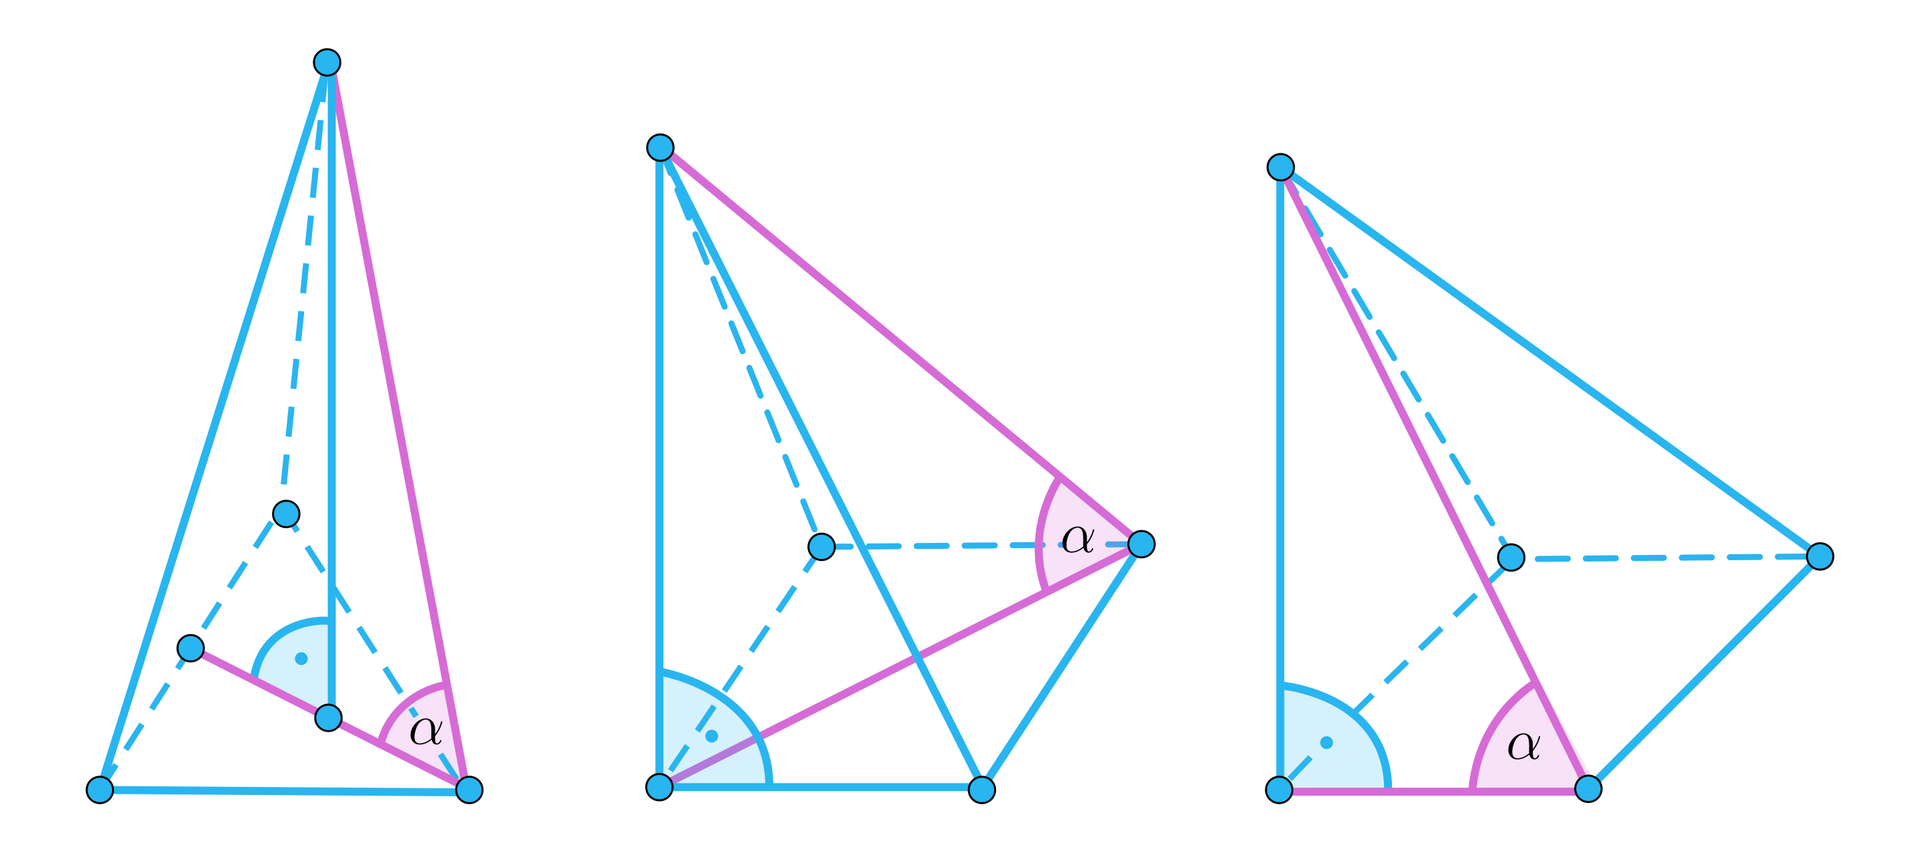 Grafika przedstawia trzy różne kąty w trzech różnych ostrosłupach. Ilustracja pierwsza przedstawia ostrosłup z narysowaną wysokością podstawy. Kąt alfa został zaznaczony pomiędzy wysokością podstawy a krawędzią ściany bocznej.  Ilustracja druga przedstawia ostrosłup z narysowaną przekątną podstawy. Kąt alfa został zaznaczony pomiędzy przekątną podstawy a krawędzią boczną bryły. Ilustracja trzecia przedstawia ostrosłup z zaznaczonym kątem alfa pomiędzy krawędzią boczną bryły a krawędzią podstawy. 